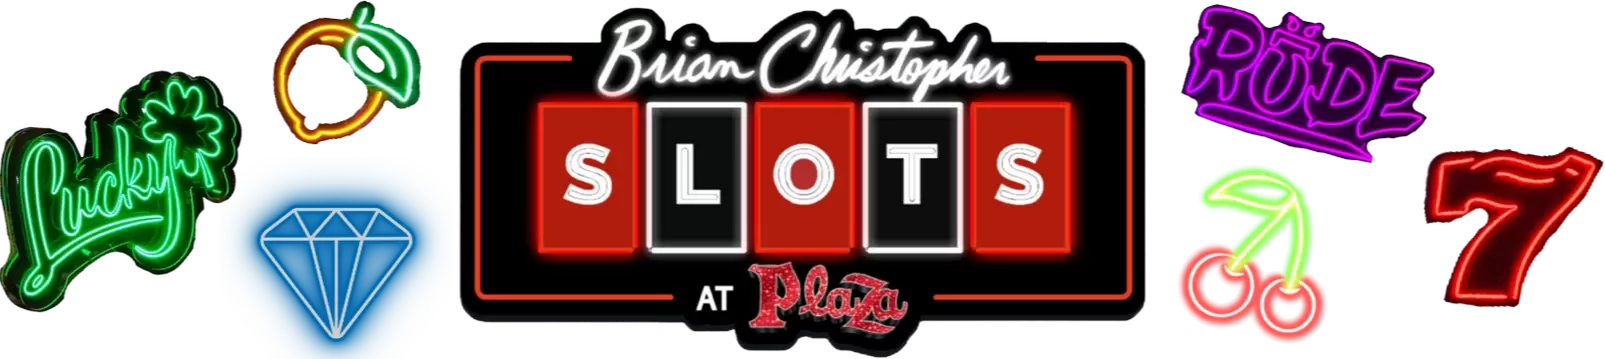 Brian Christopher Slots at Plaza